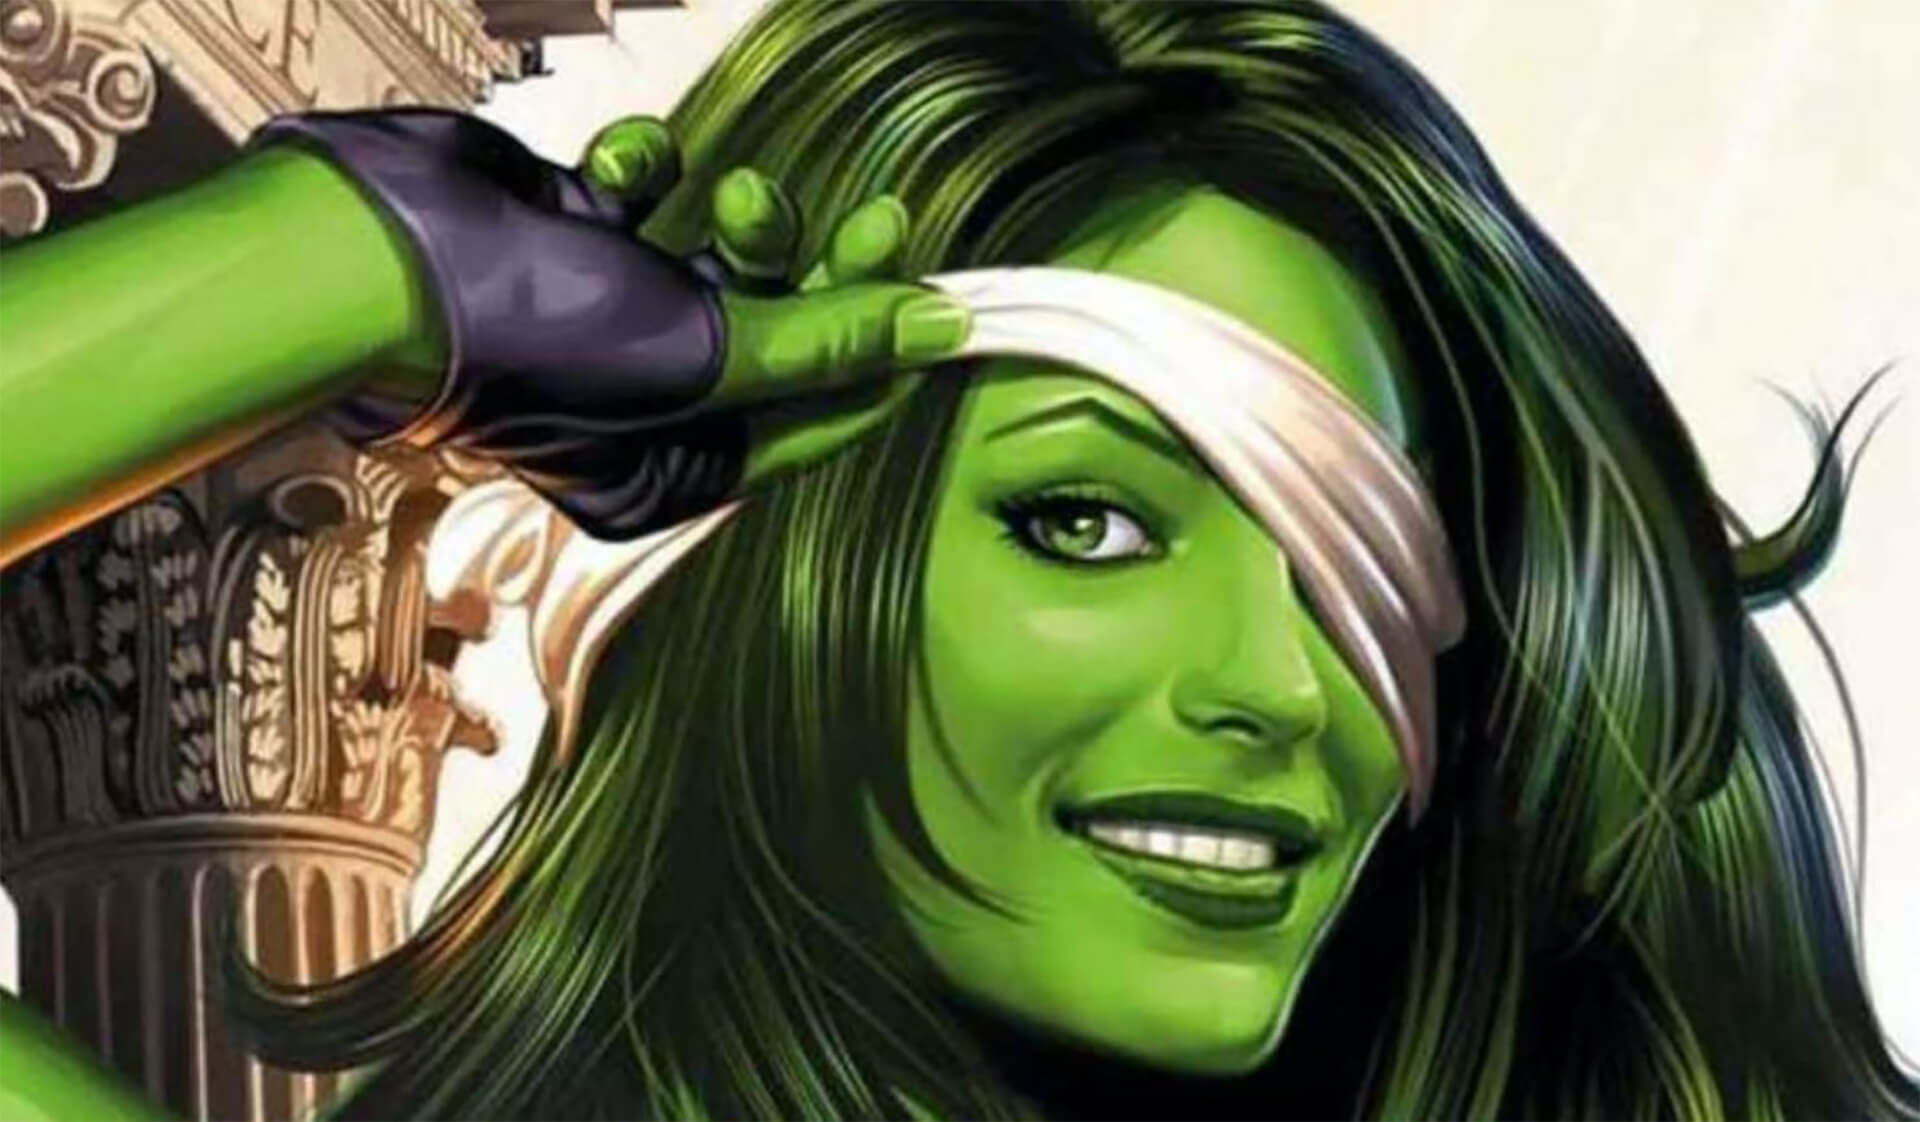 Hamarosan többet megtudunk a She-Hulk-sorozatról, mert már folyik a szereplőválogatás